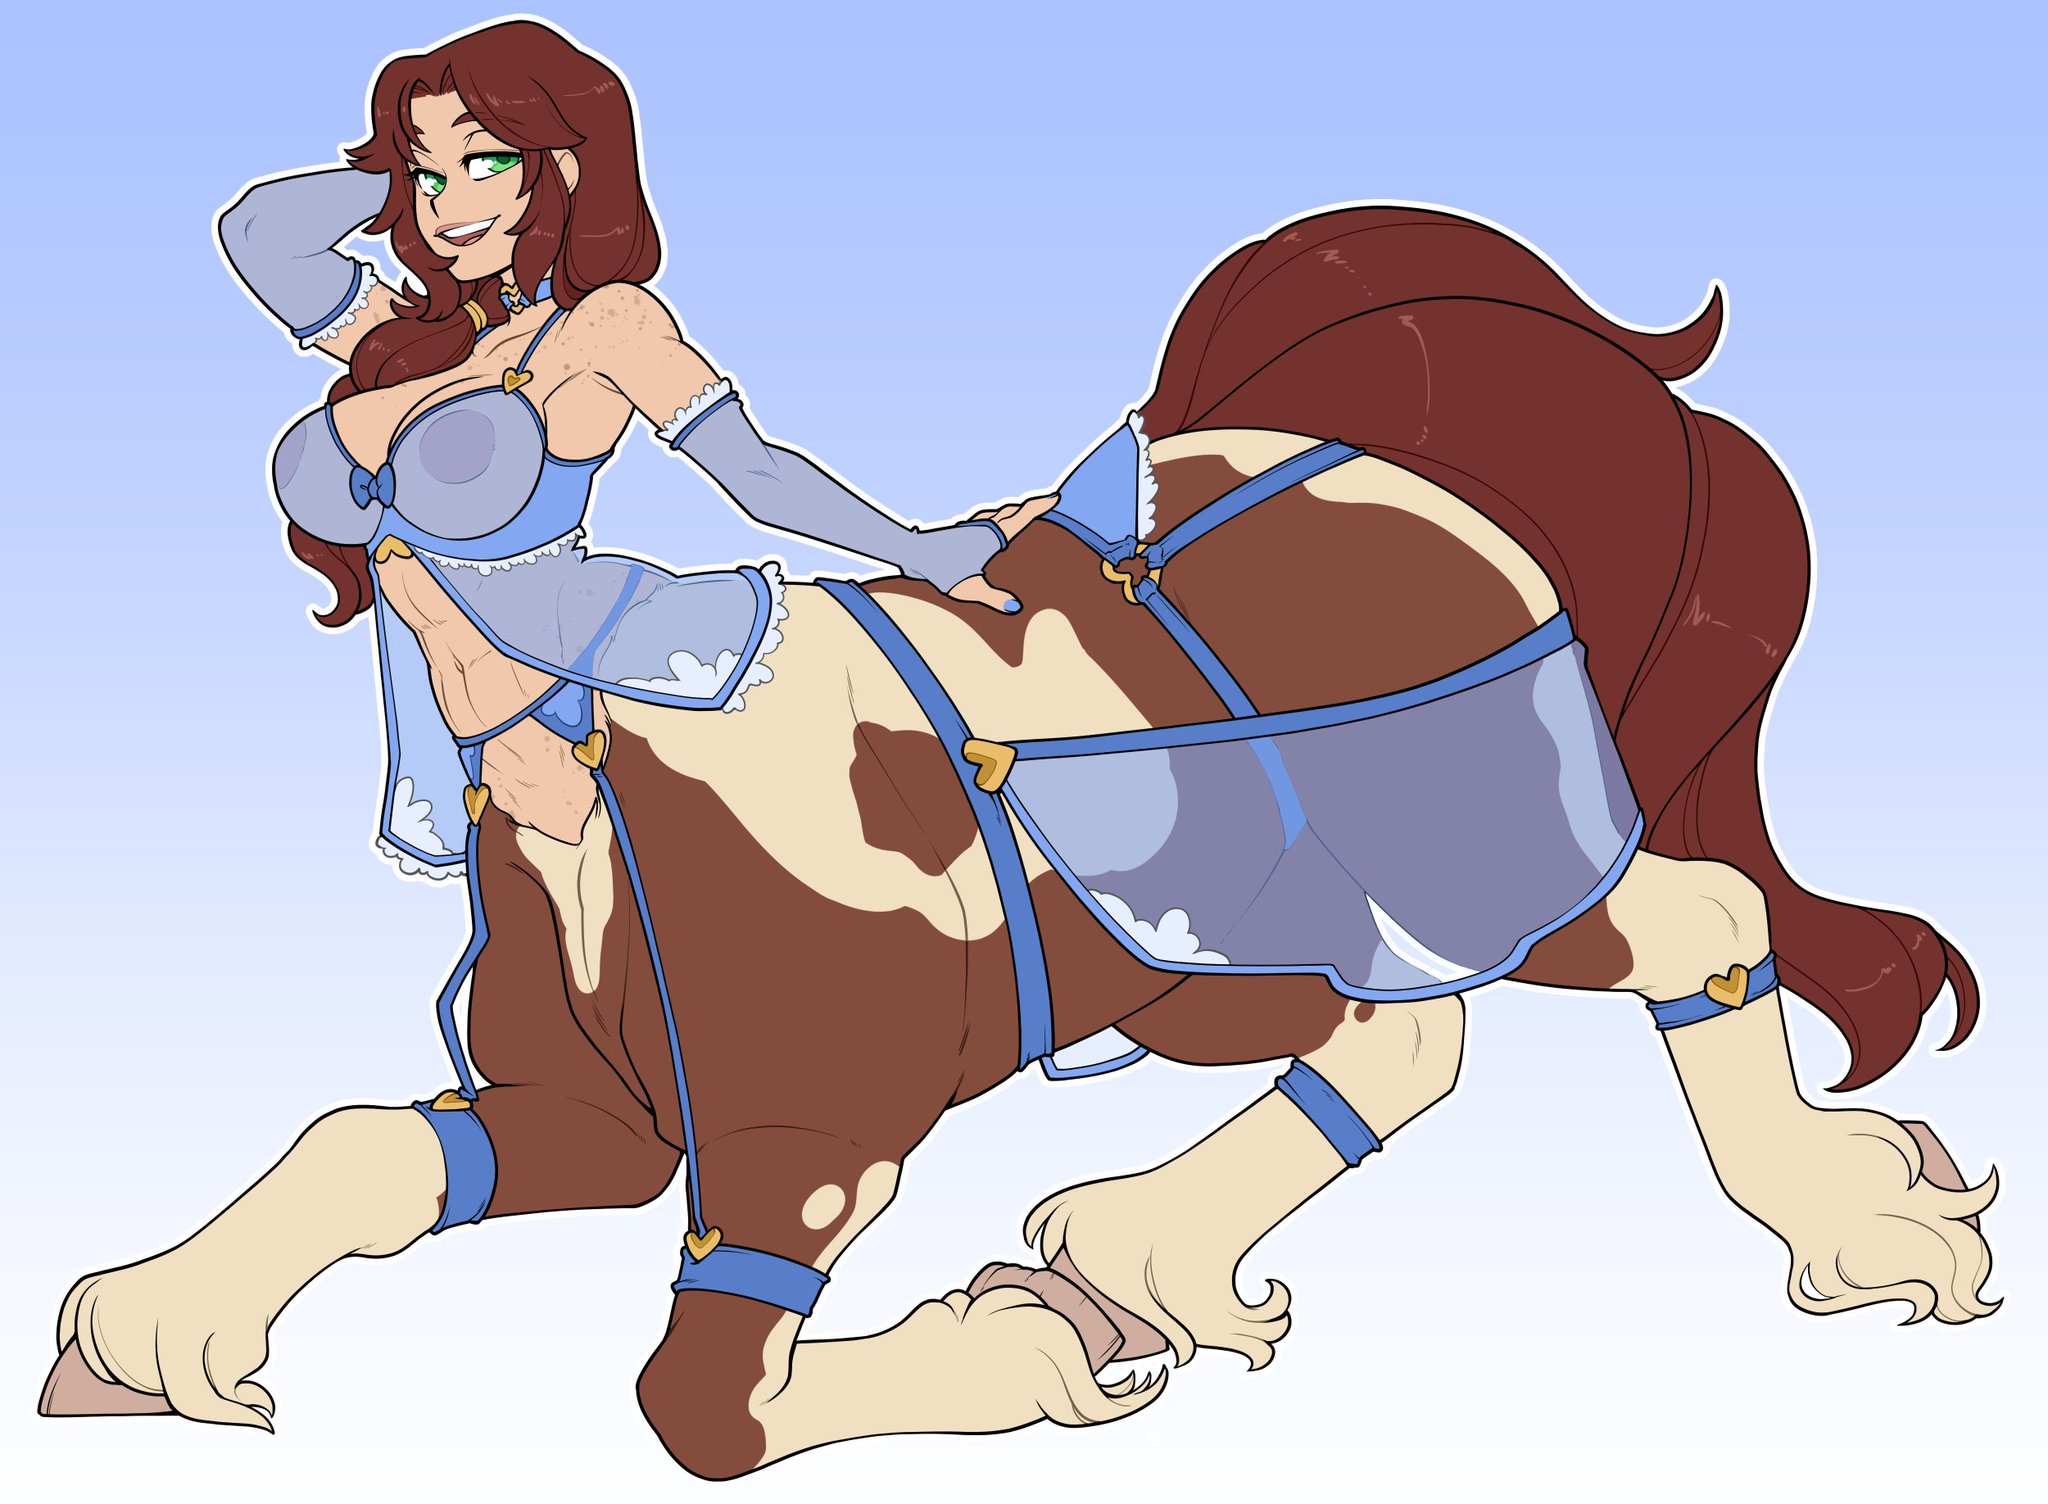 “Asami's centaur mom returns for some lingerie modeling and fun im...